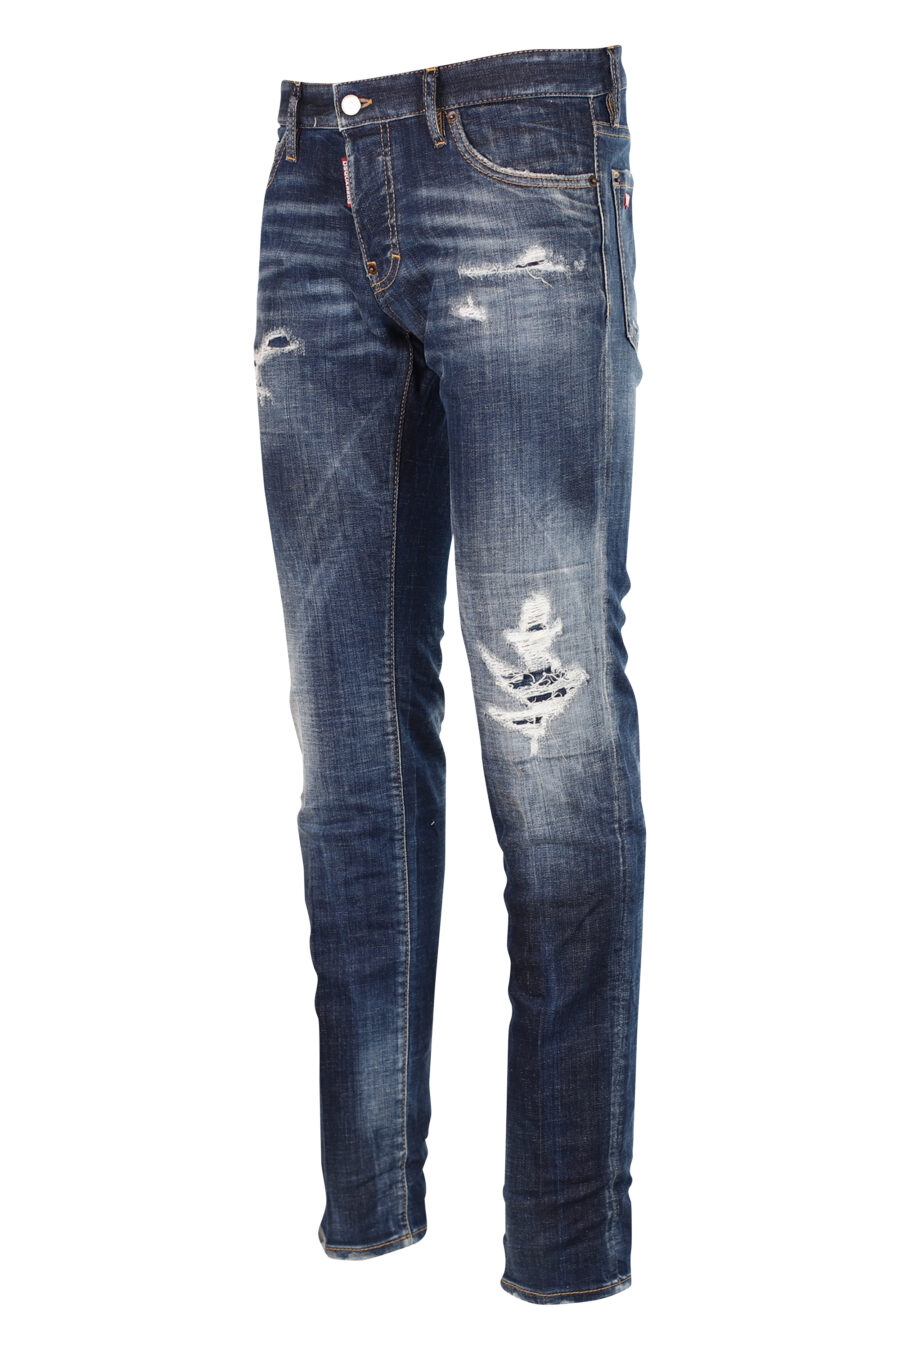 Semi-getragene blaue "Slim jean" Jeans mit Rissen - 8052134942789